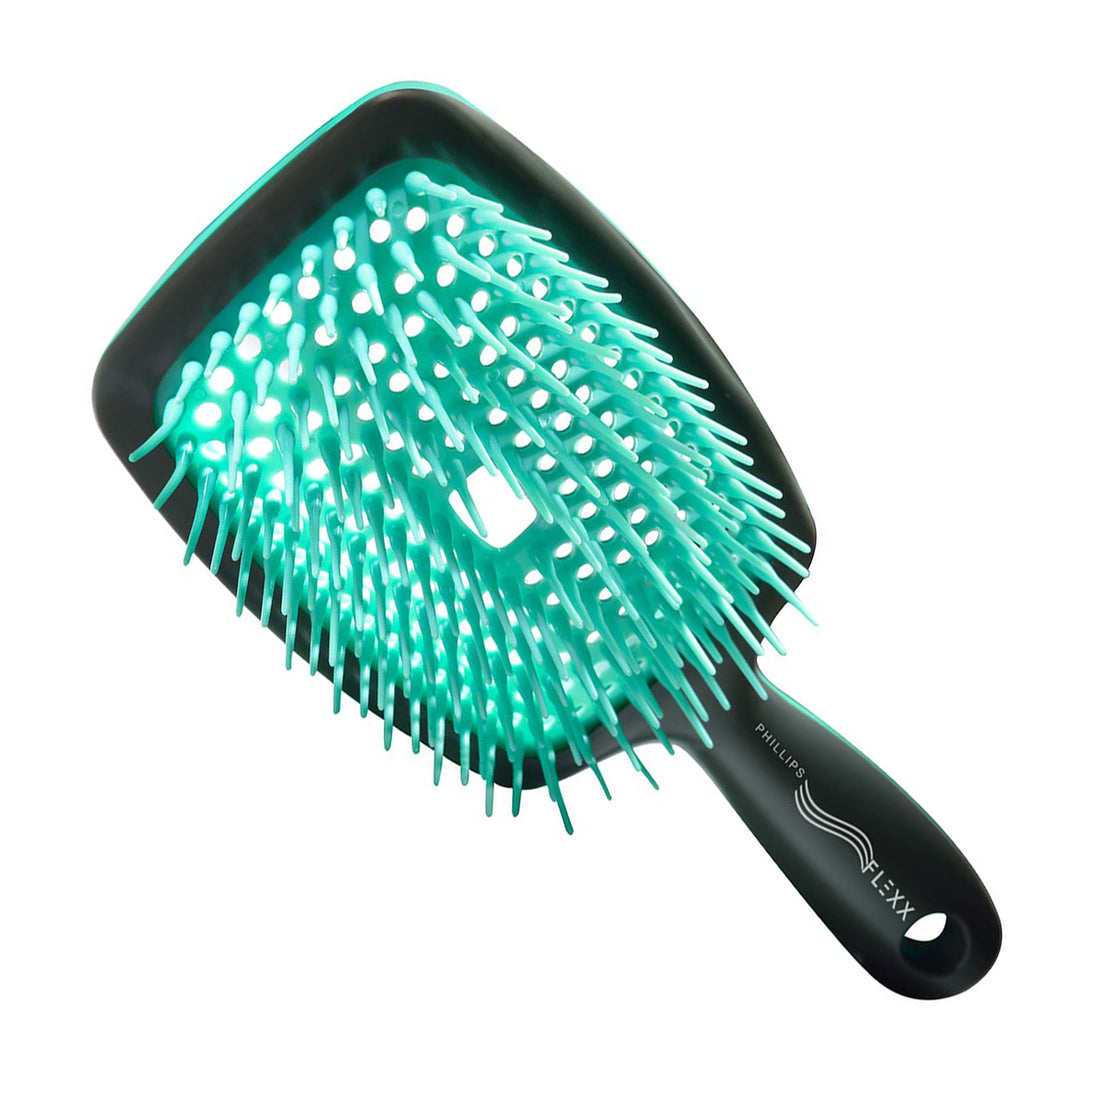 Cual es el mejor cepillo para el secado del cabello?